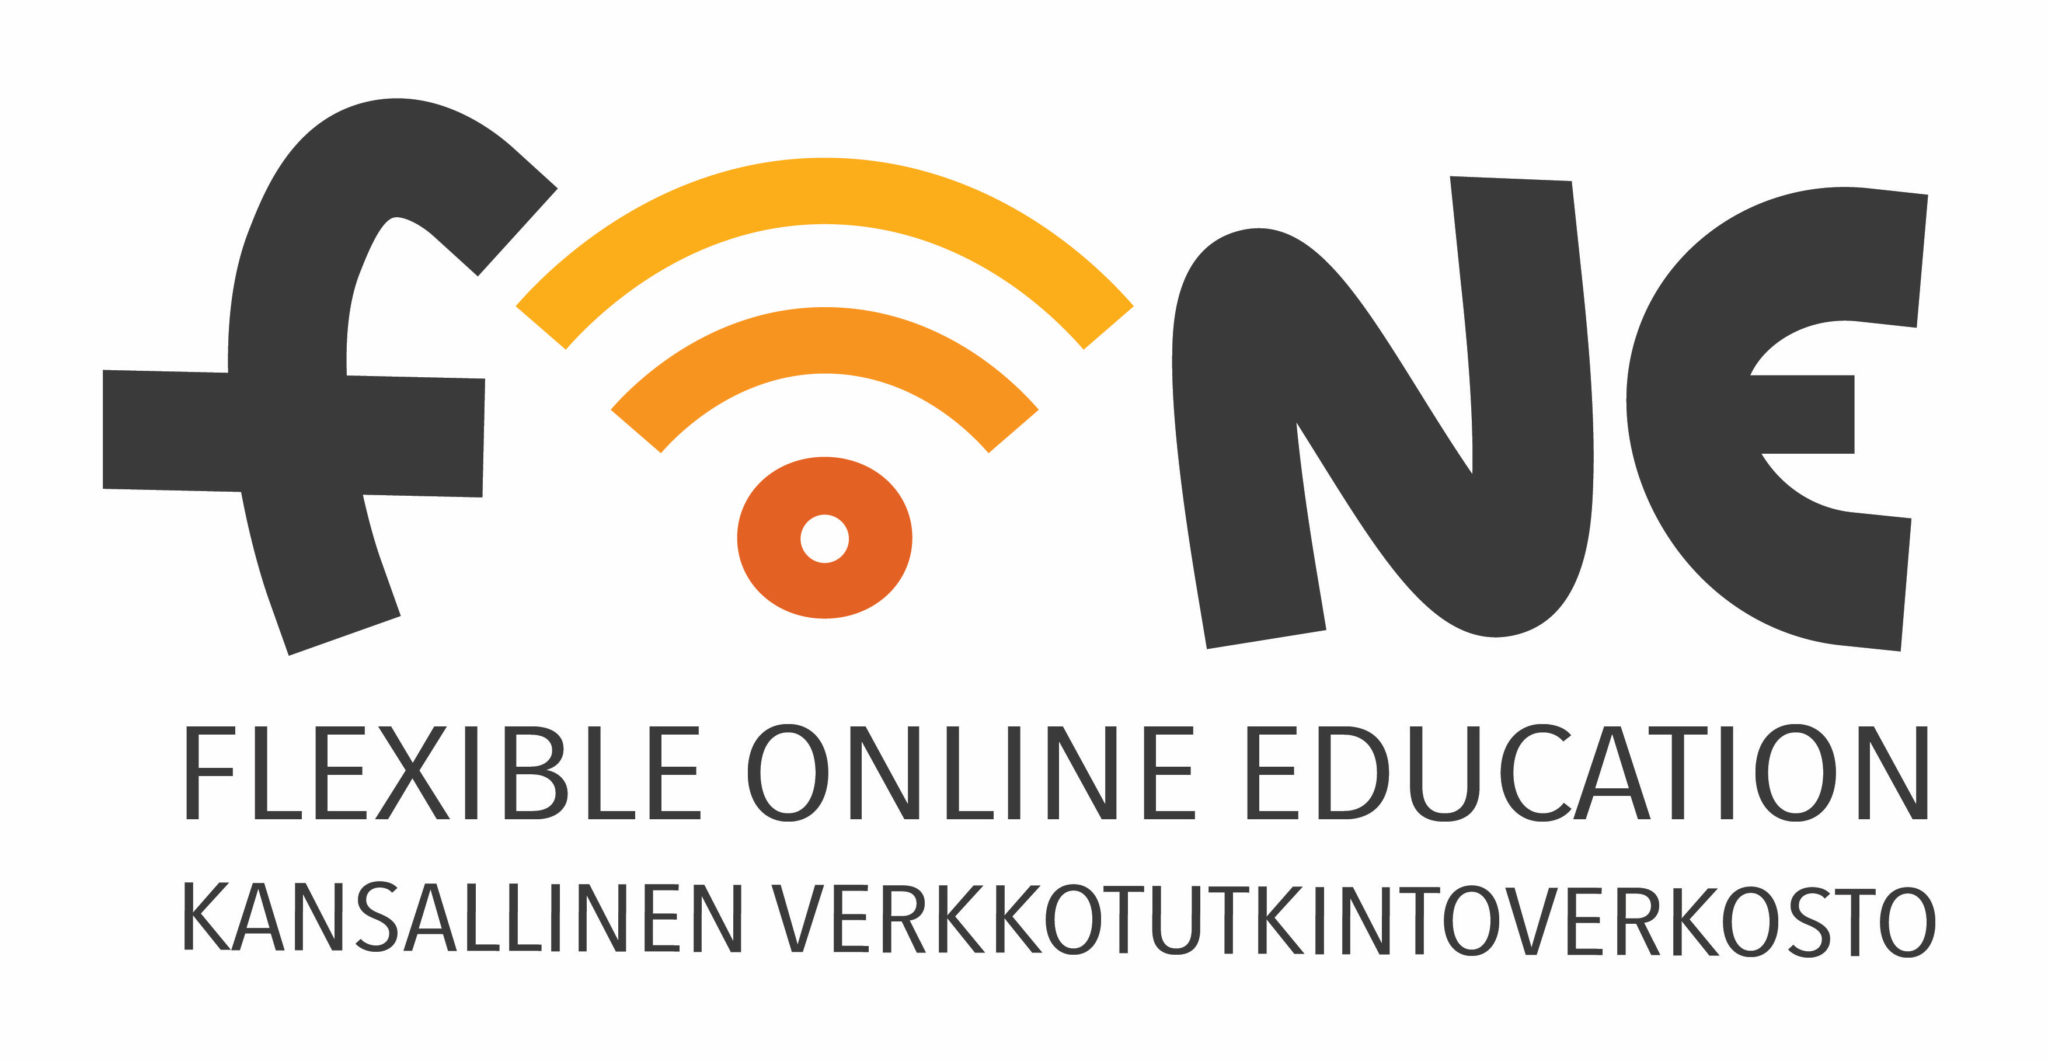 Kuvassa on näkyvilla Kansallinen verkkotutkintoverkosto -hankkeen logo ja englanninkielinen käännös Flexible Online Education, mistä tulee hankkeen lyhenne FON